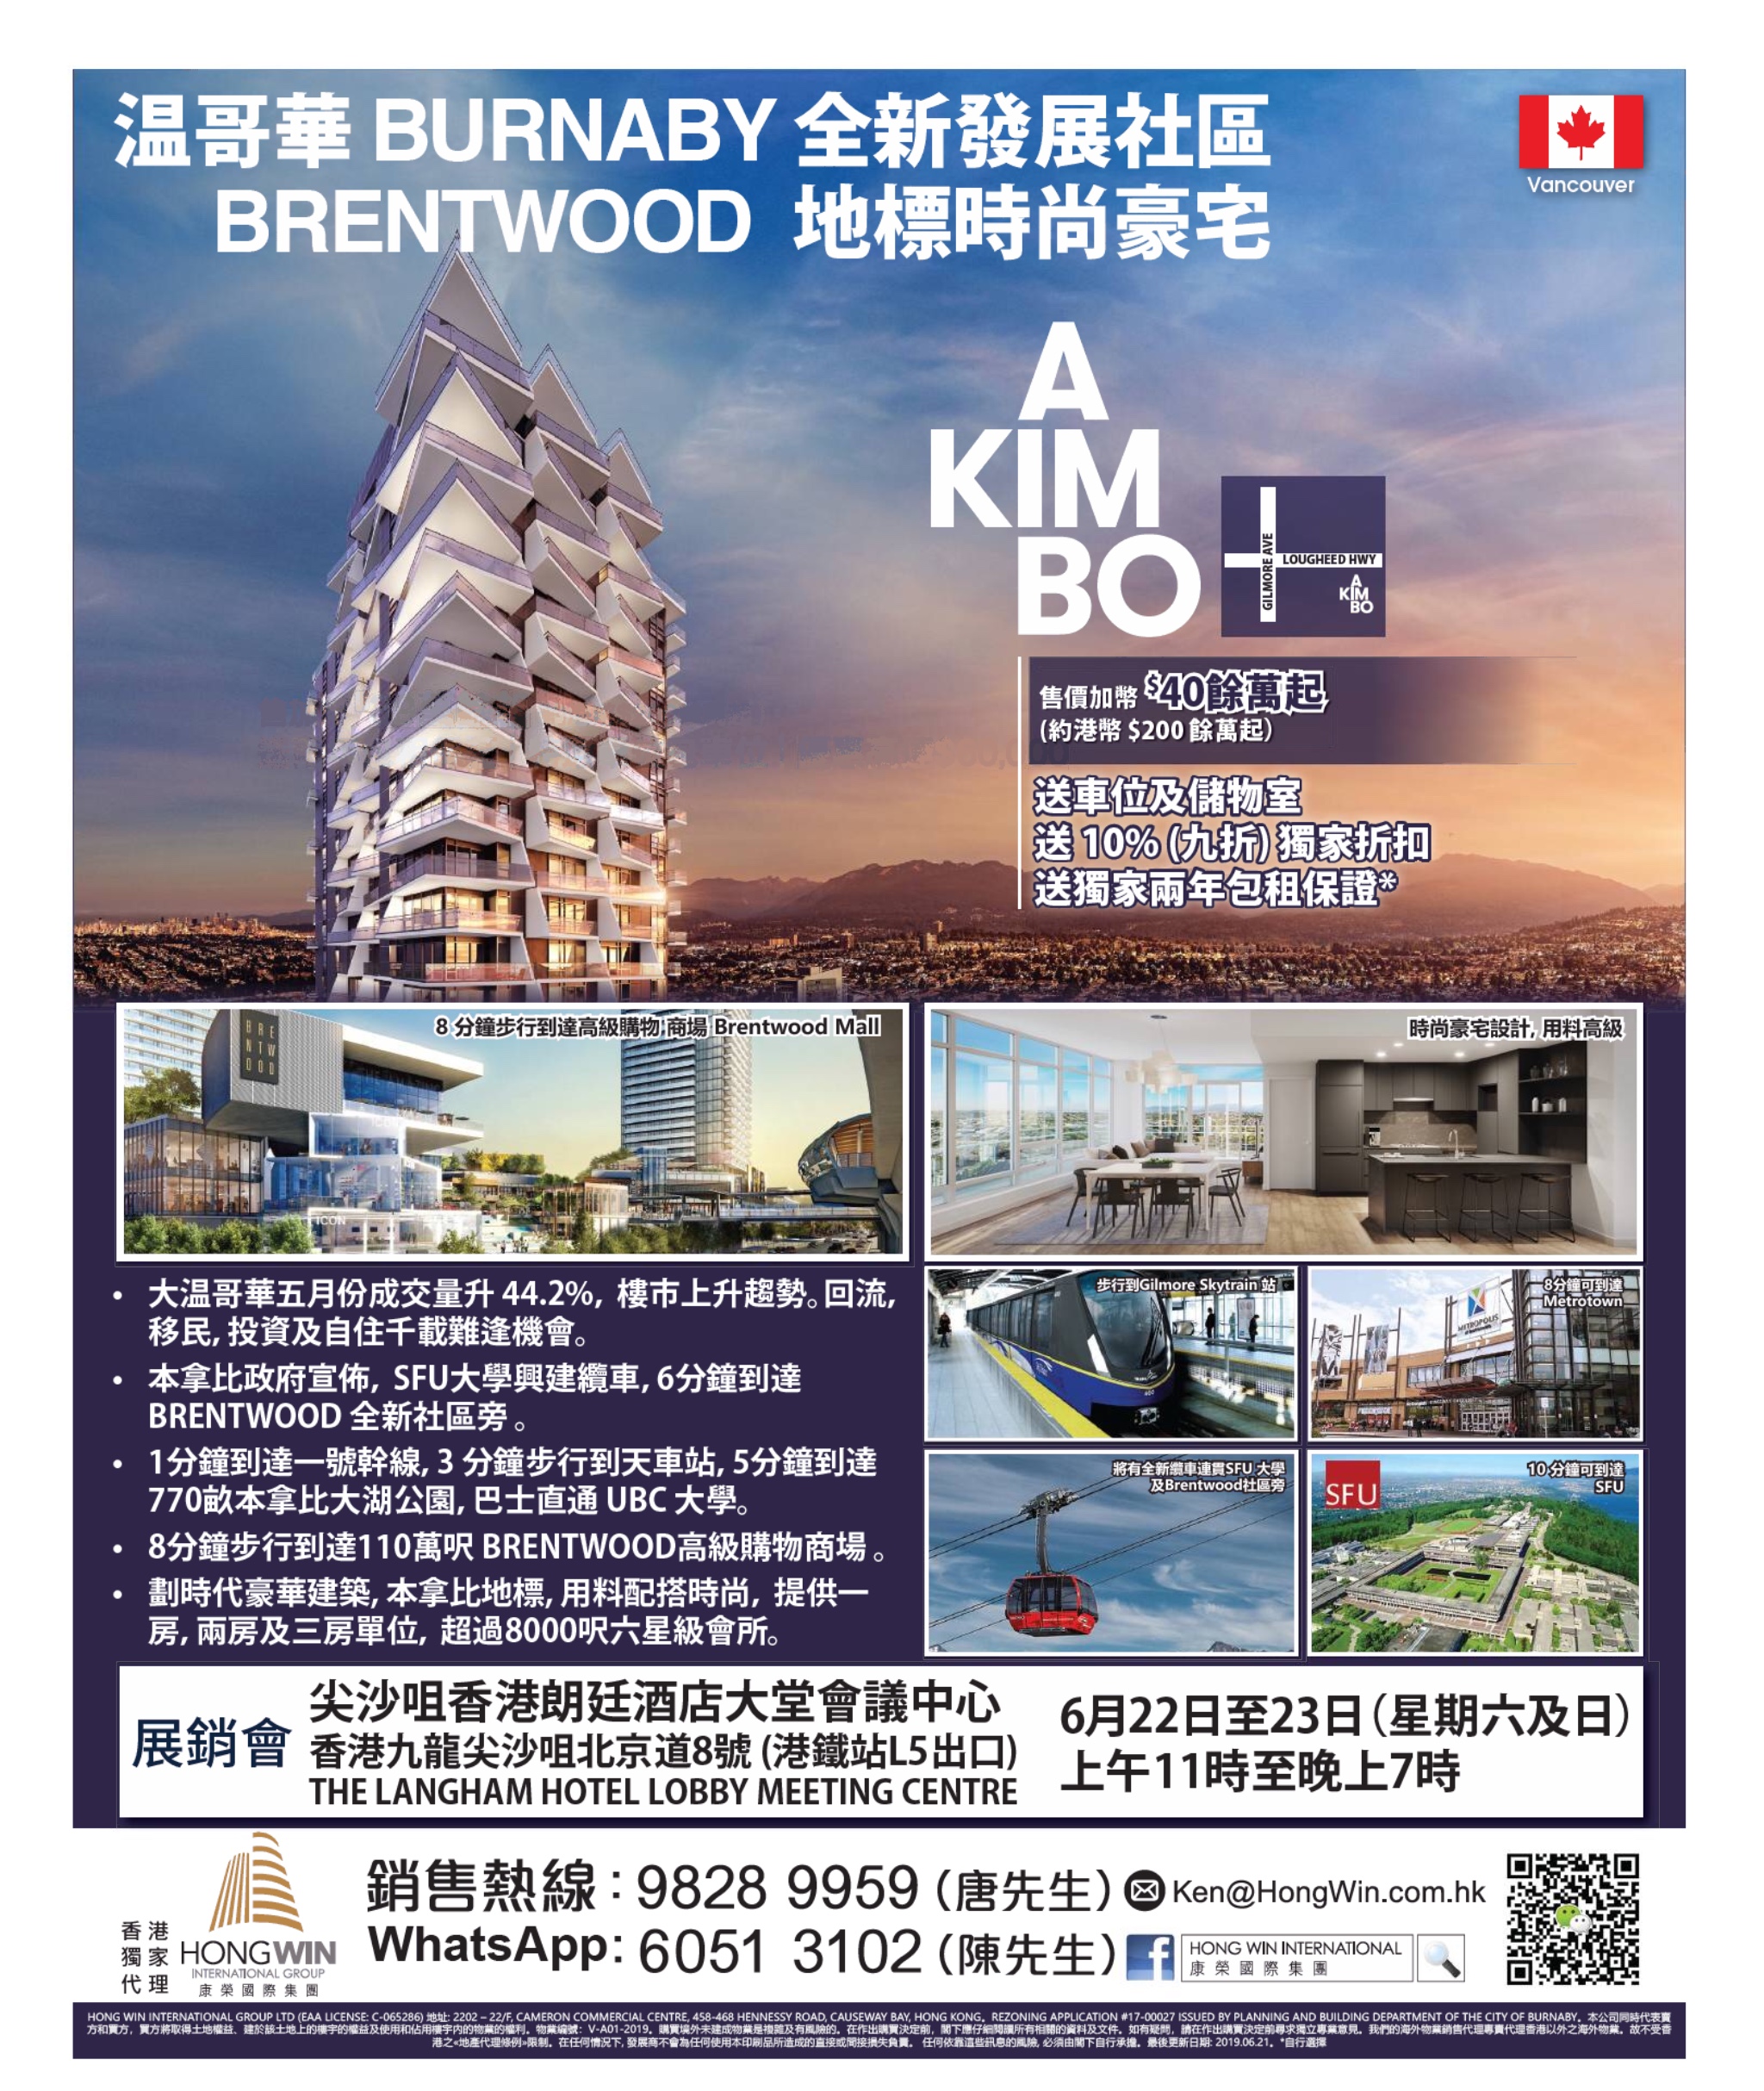 香港地產代理網 HK Estate Agent 最新住宅、商舖、村屋、車位、工業大廈資訊: 溫哥華